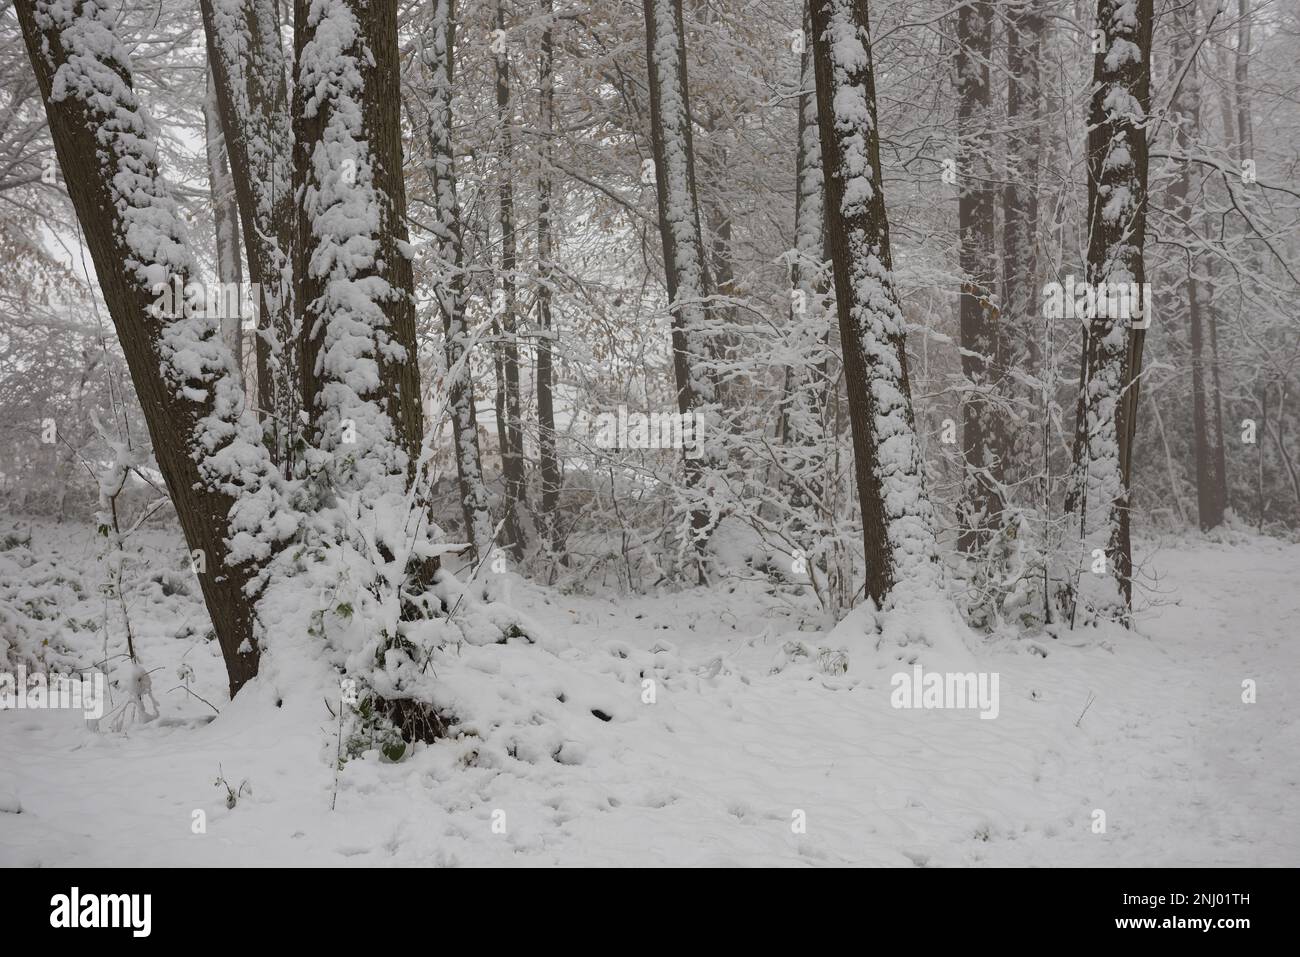 Vent violent la neige soufflée sur les arbres recouvrant la surface exposée au nord, les branches s'affaisse sous le poids d'un blizzard violent Banque D'Images